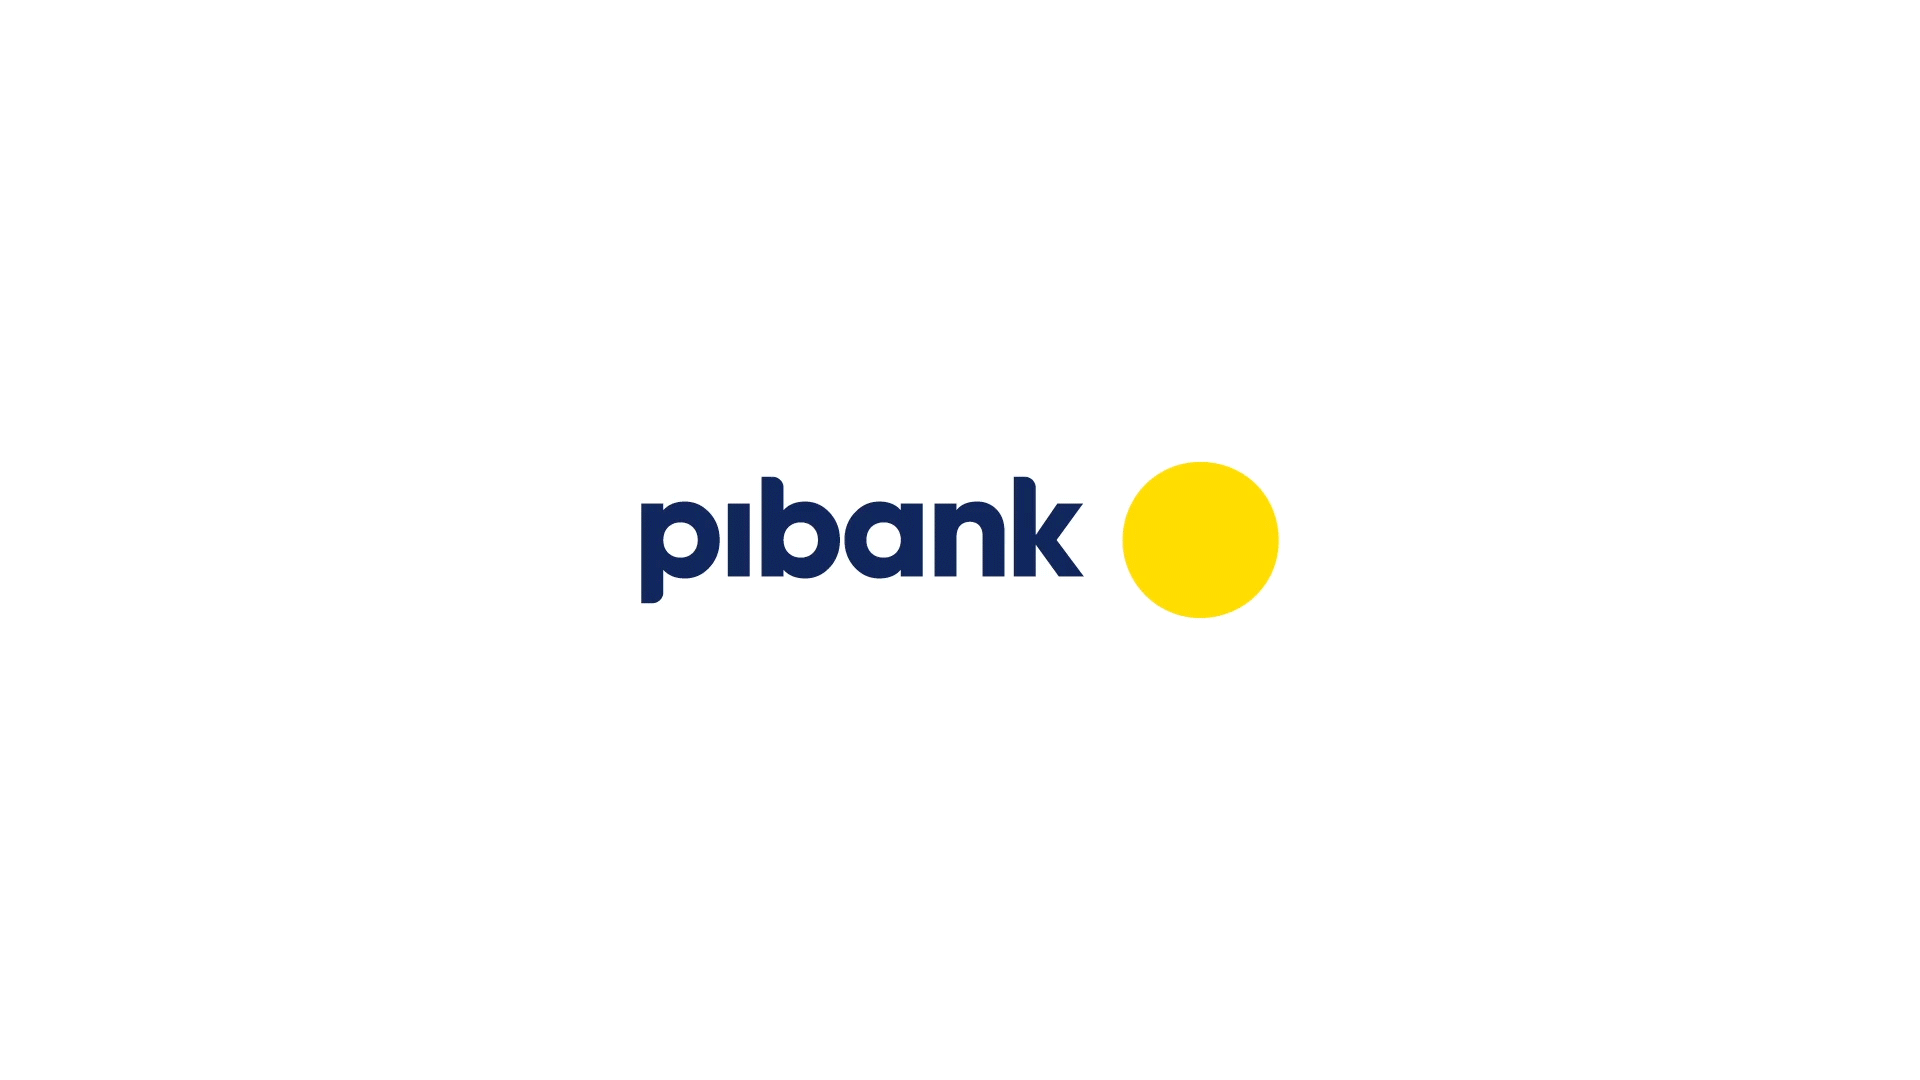 Pibank wikipedia